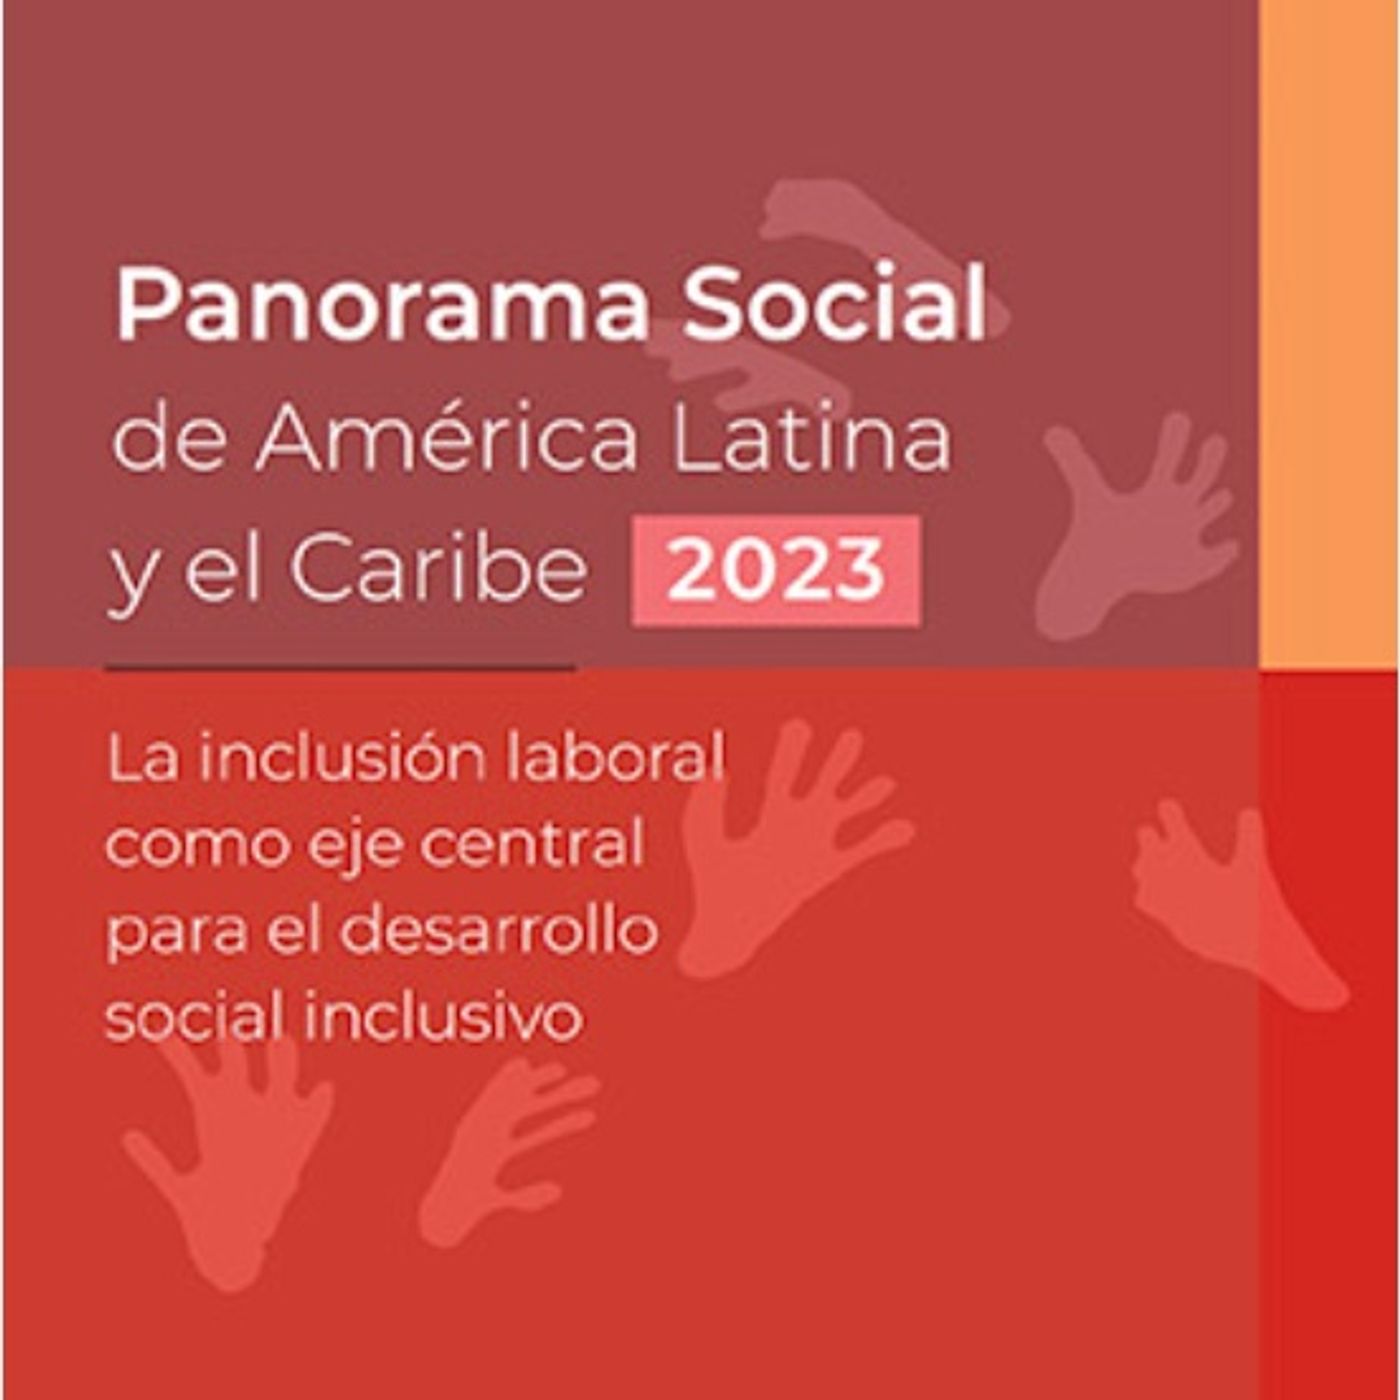 “La inclusión laboral es un eje central para el desarrollo social inclusivo”, Karina Batthyány.